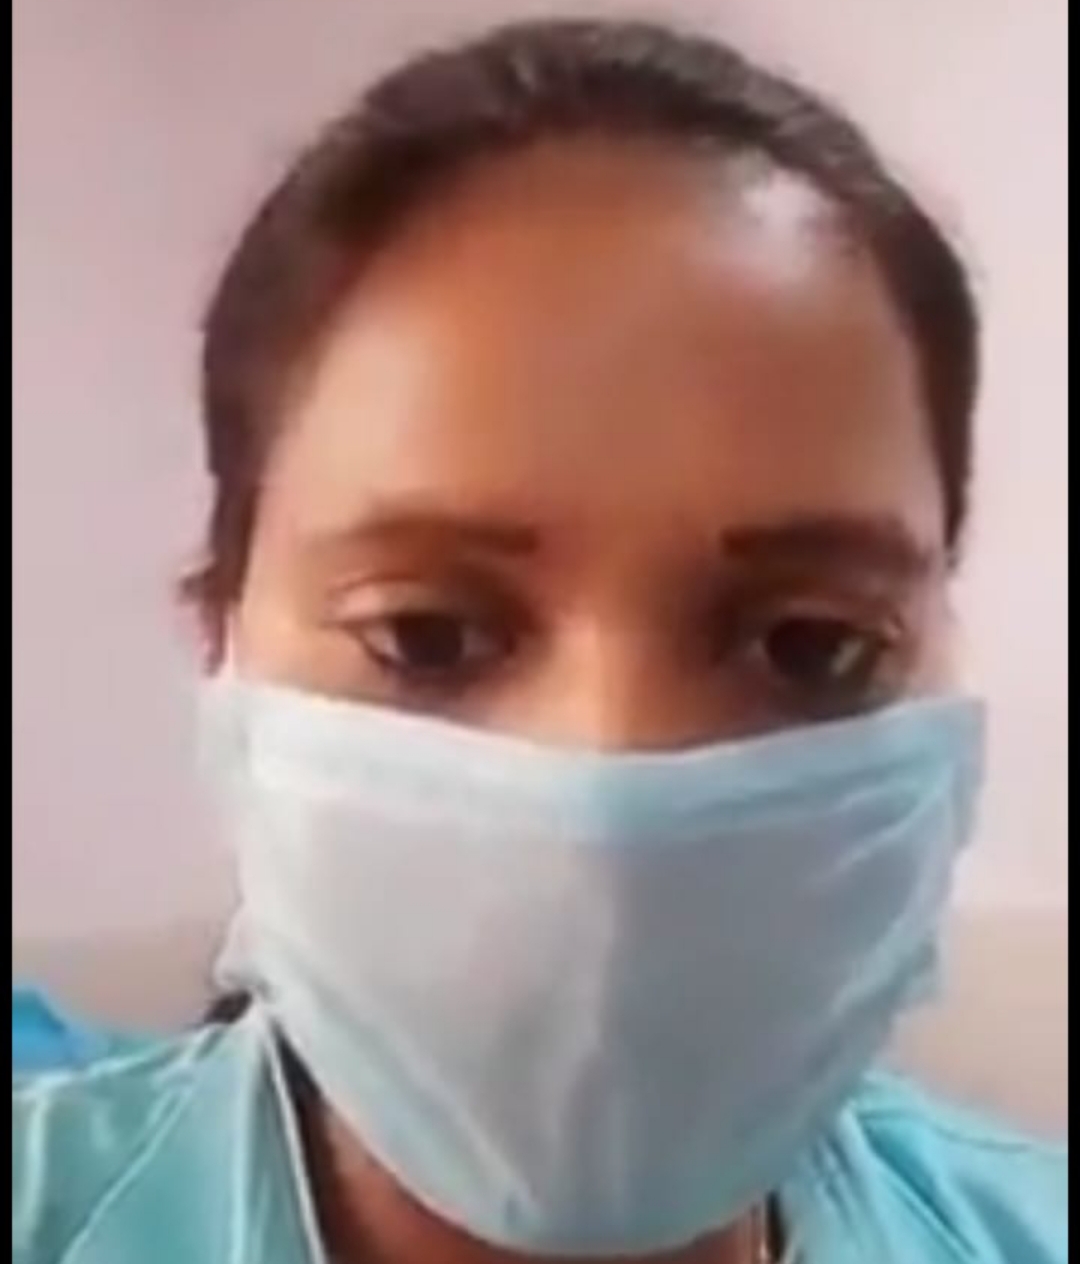 कोविड वार्ड में भर्ती महिला की पानी के लिए तड़प-तड़प कर हुई मौत, अव्यवस्थाओं को लेकर जिला अस्पताल से महिला पुलिसकर्मी का वीडियो हुआ वायरल | New India Times